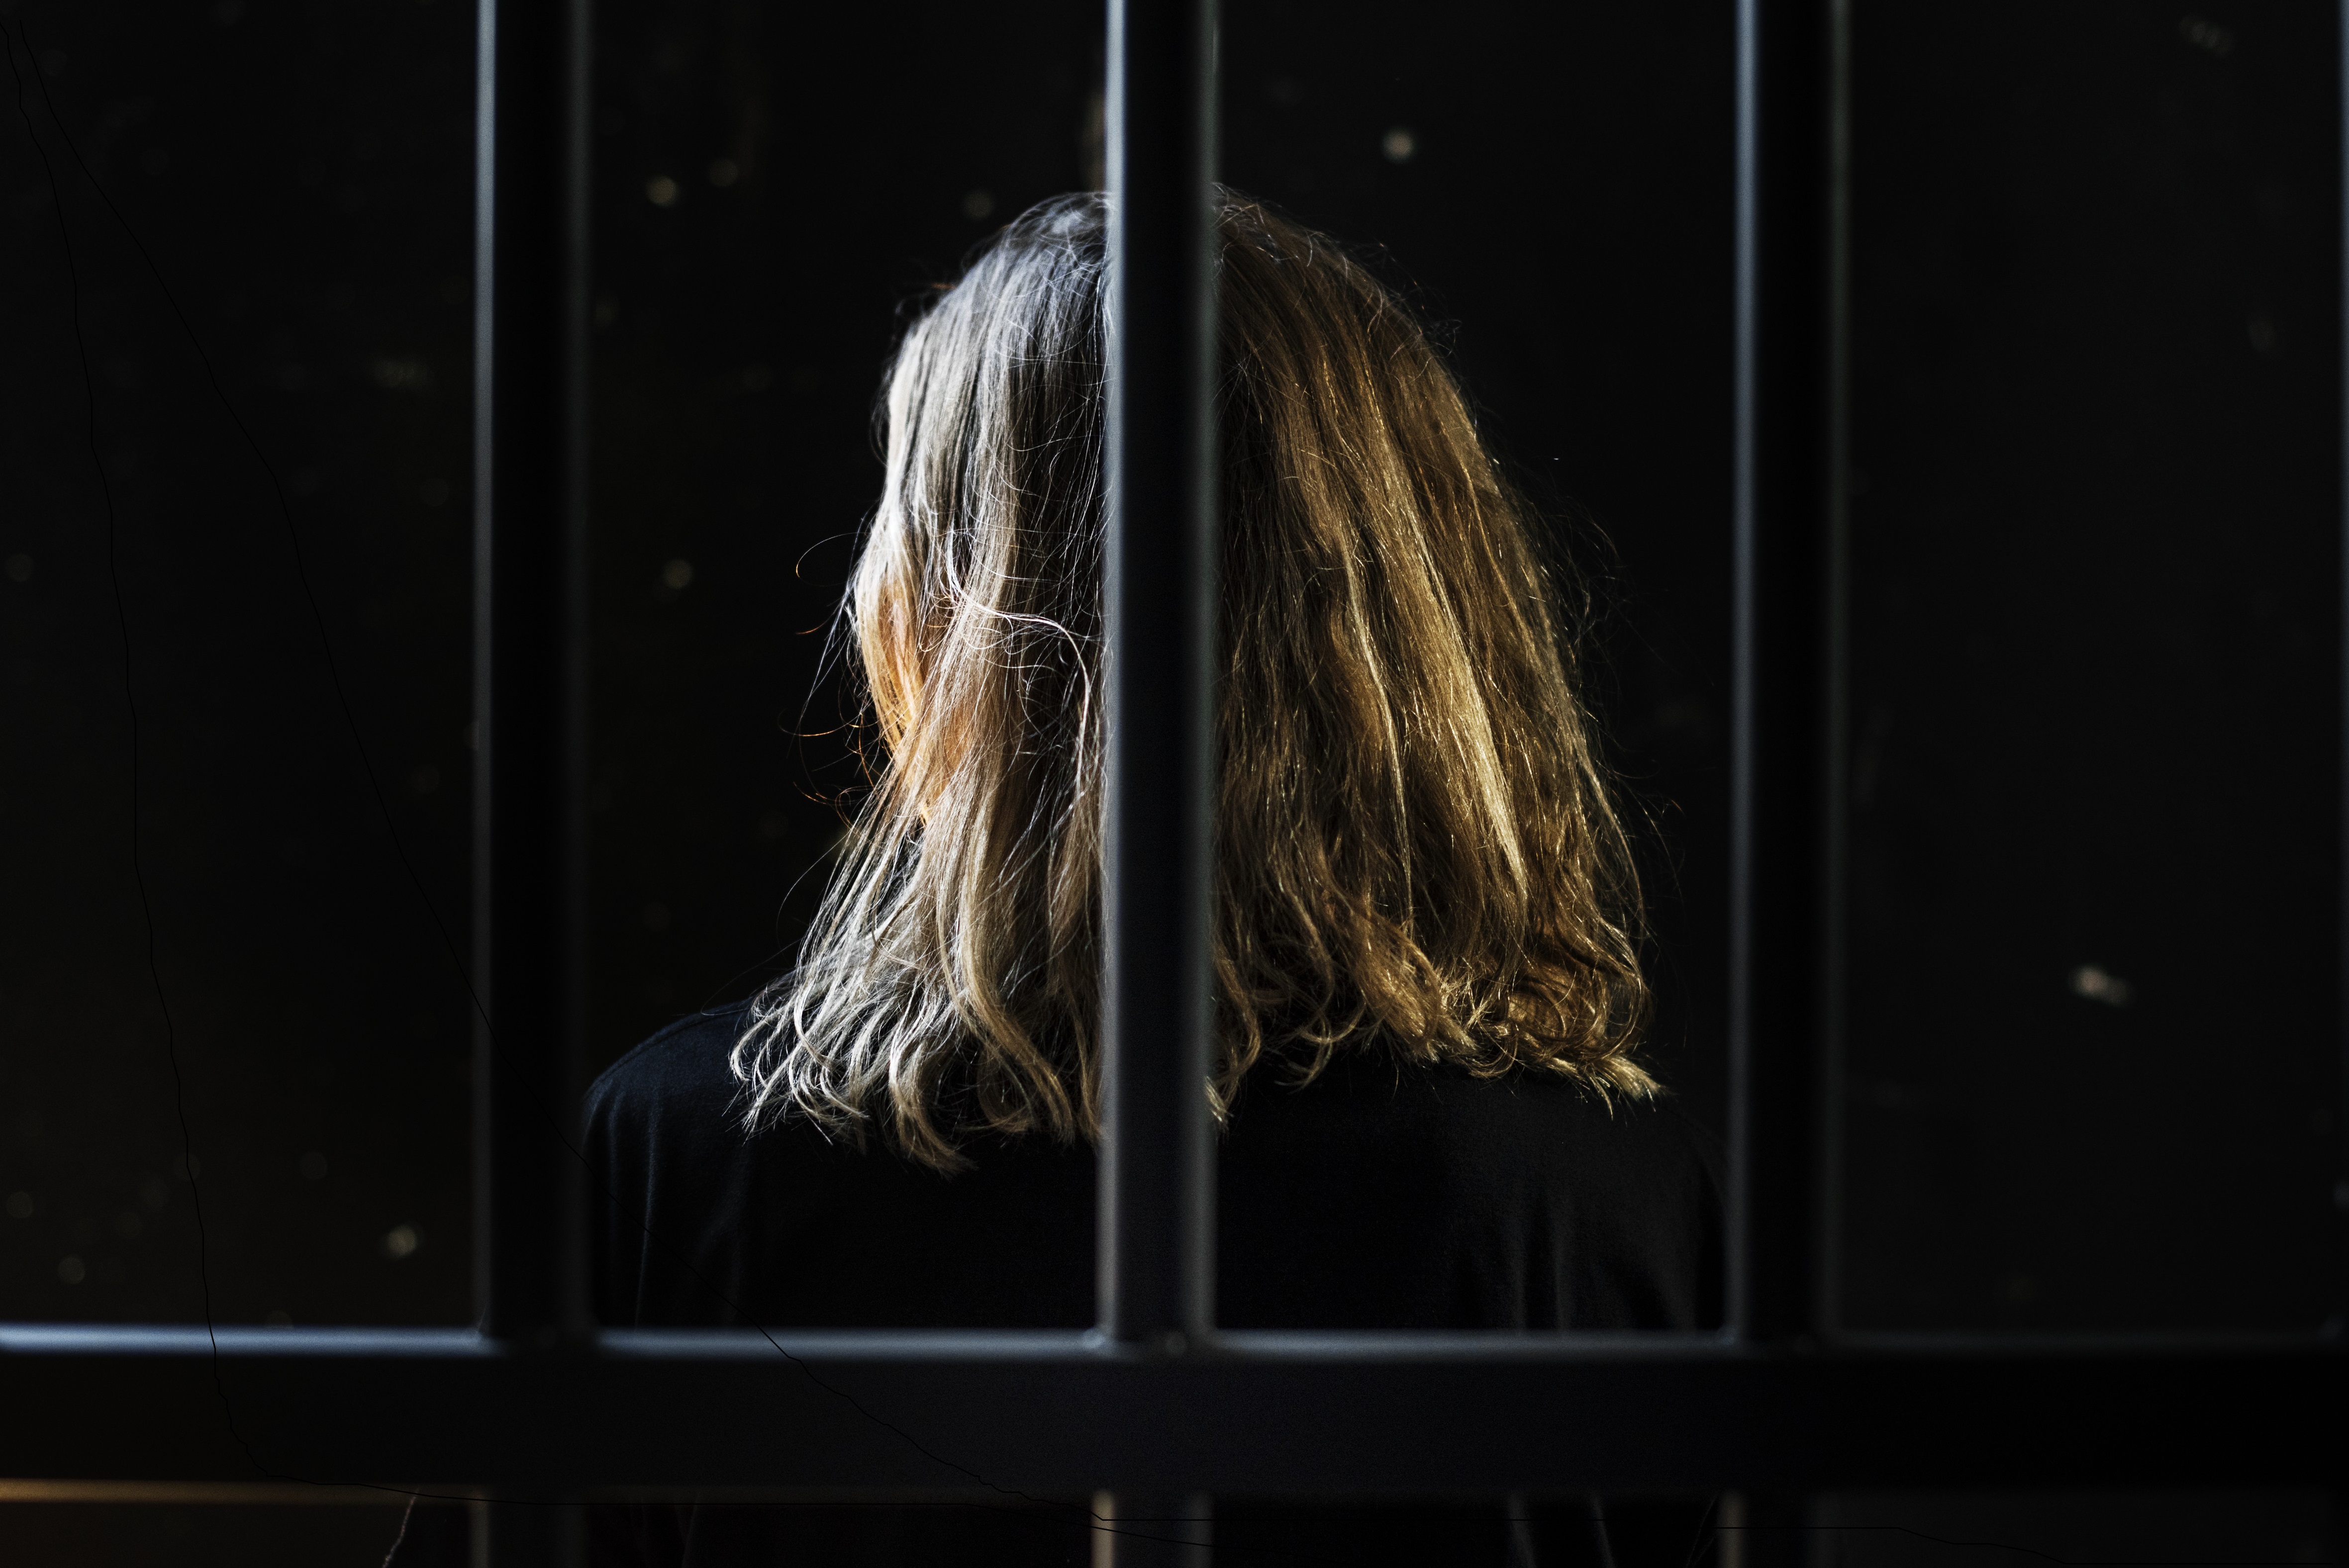 Image of woman behind bars